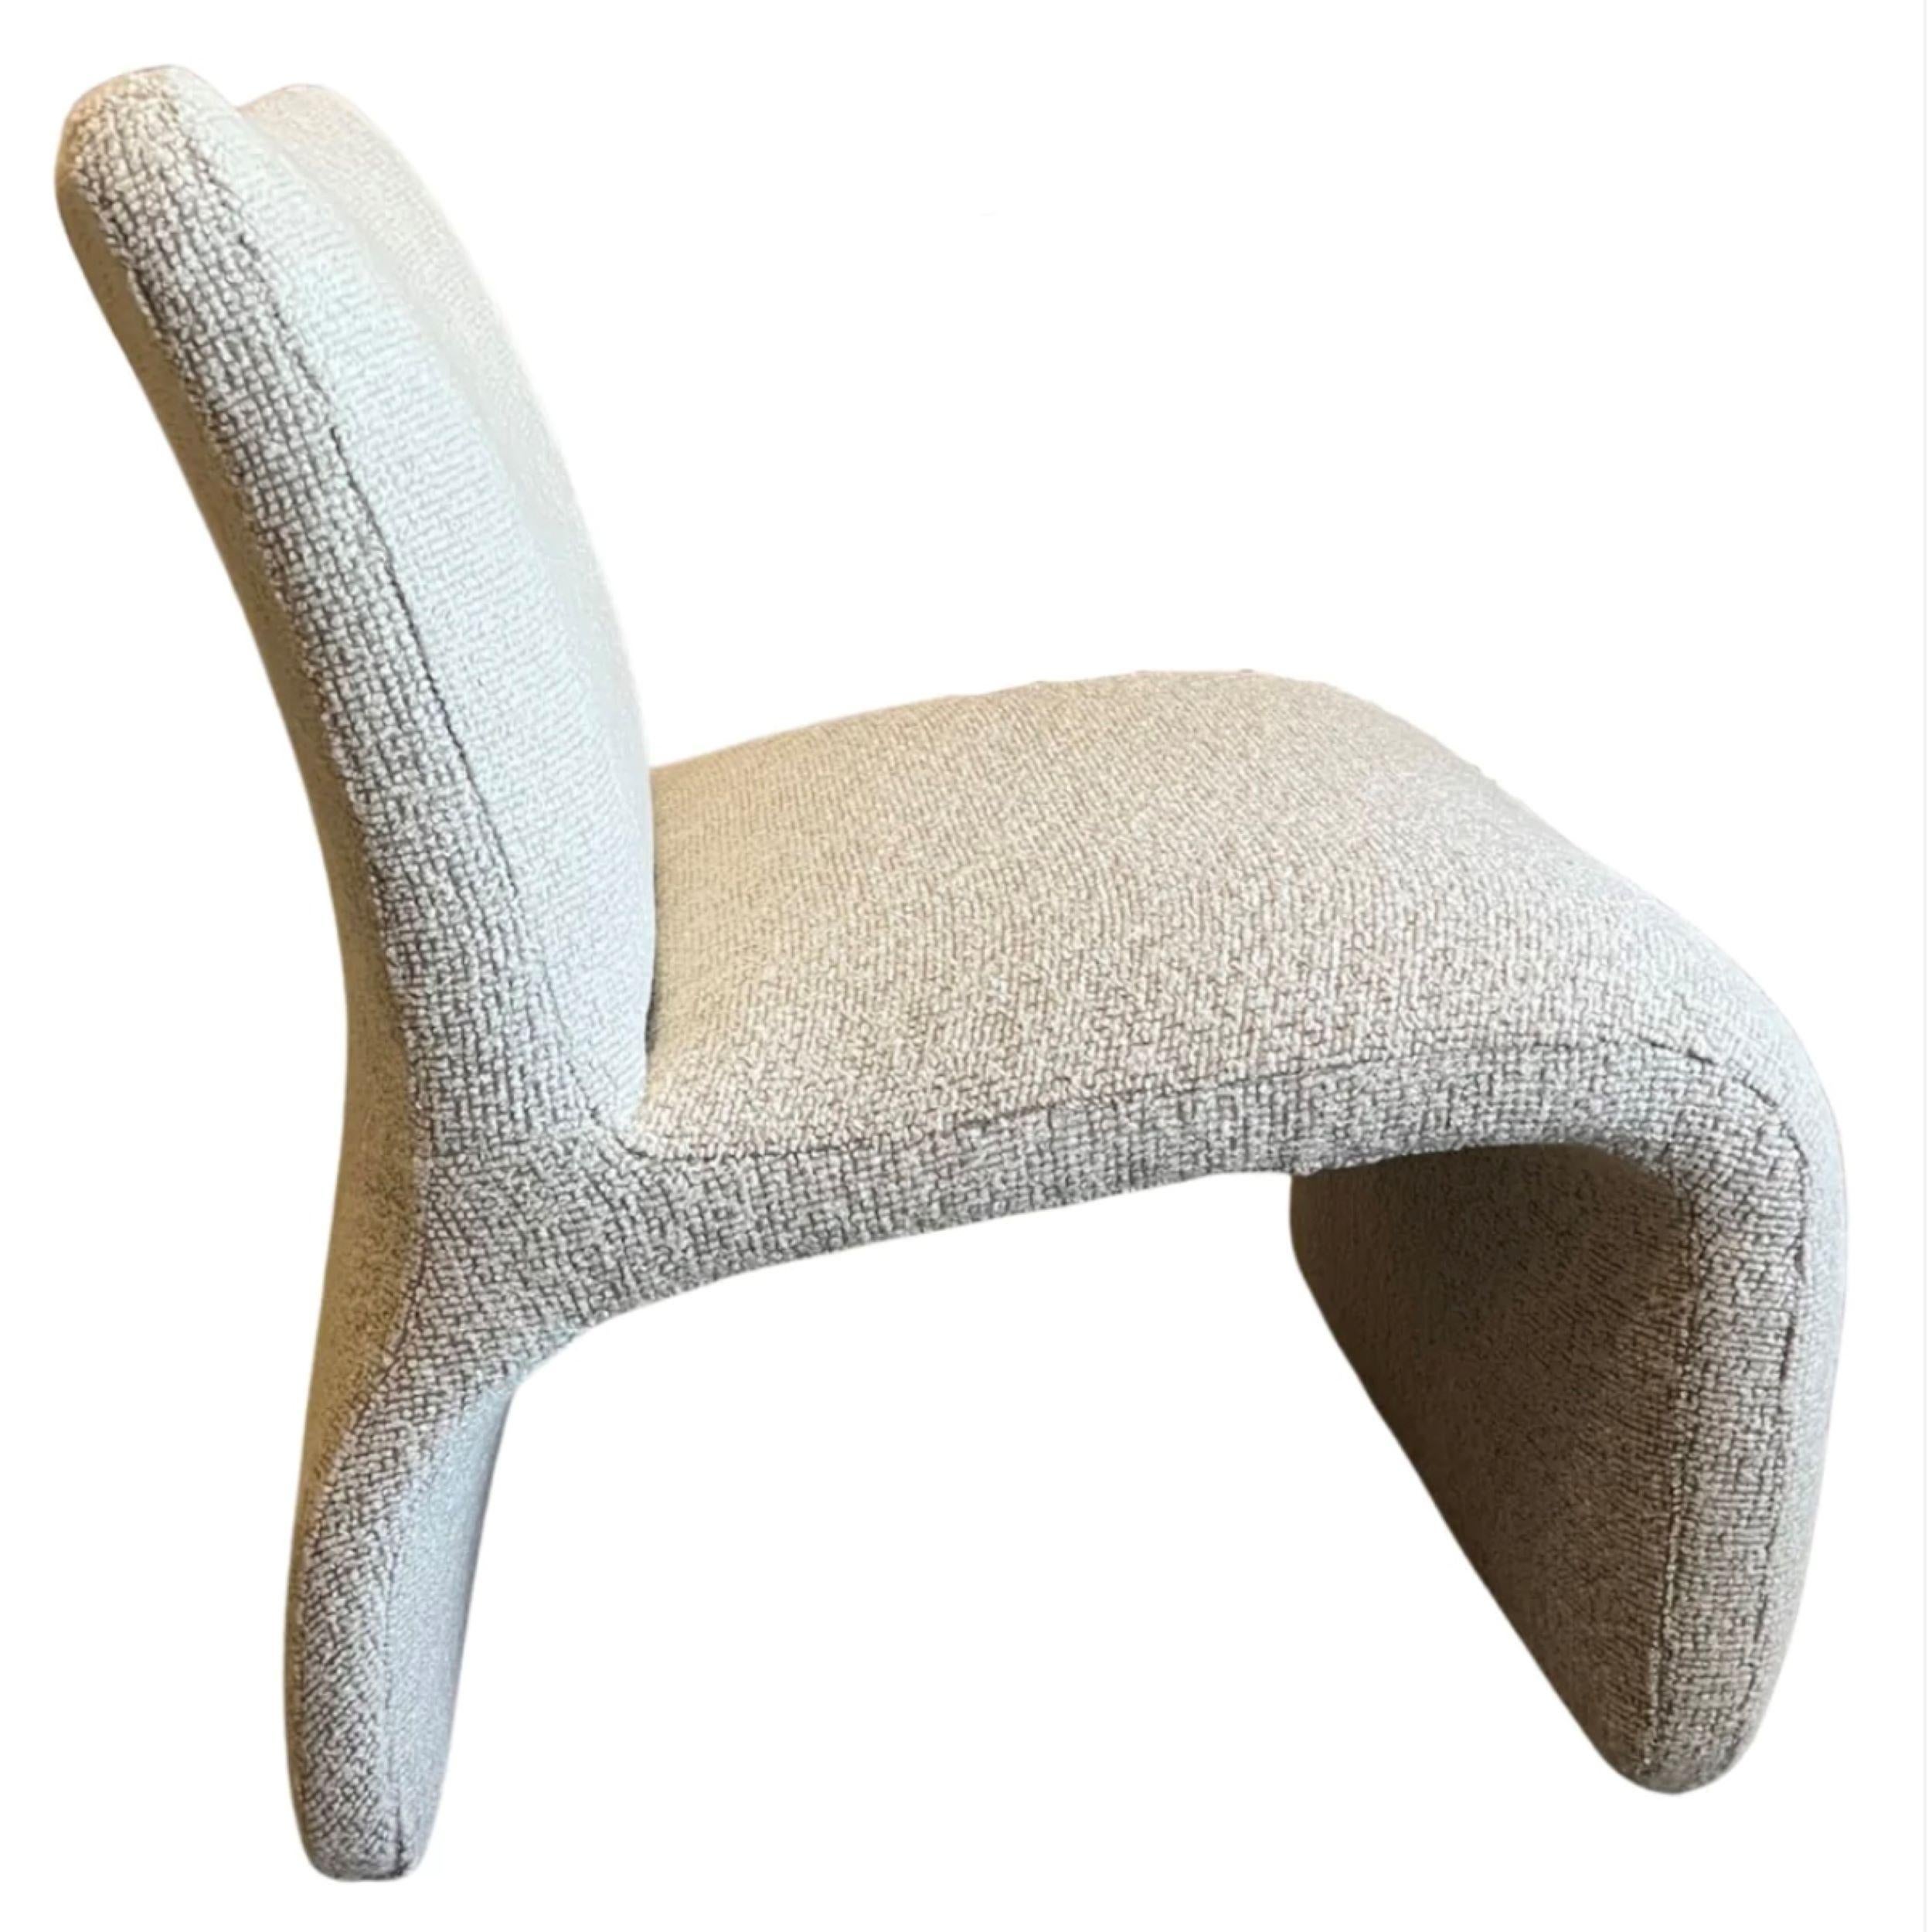 Il s'agit d'une paire de chaises longues sculpturales.

Attribué à Vladimir Kagan (Design/One) & fabriqué par Weiman Preview Furniture
1980's

Les chaises viennent d'être retapissées avec un magnifique tissu neutre, Oatmeal Tones.

Les formes sont